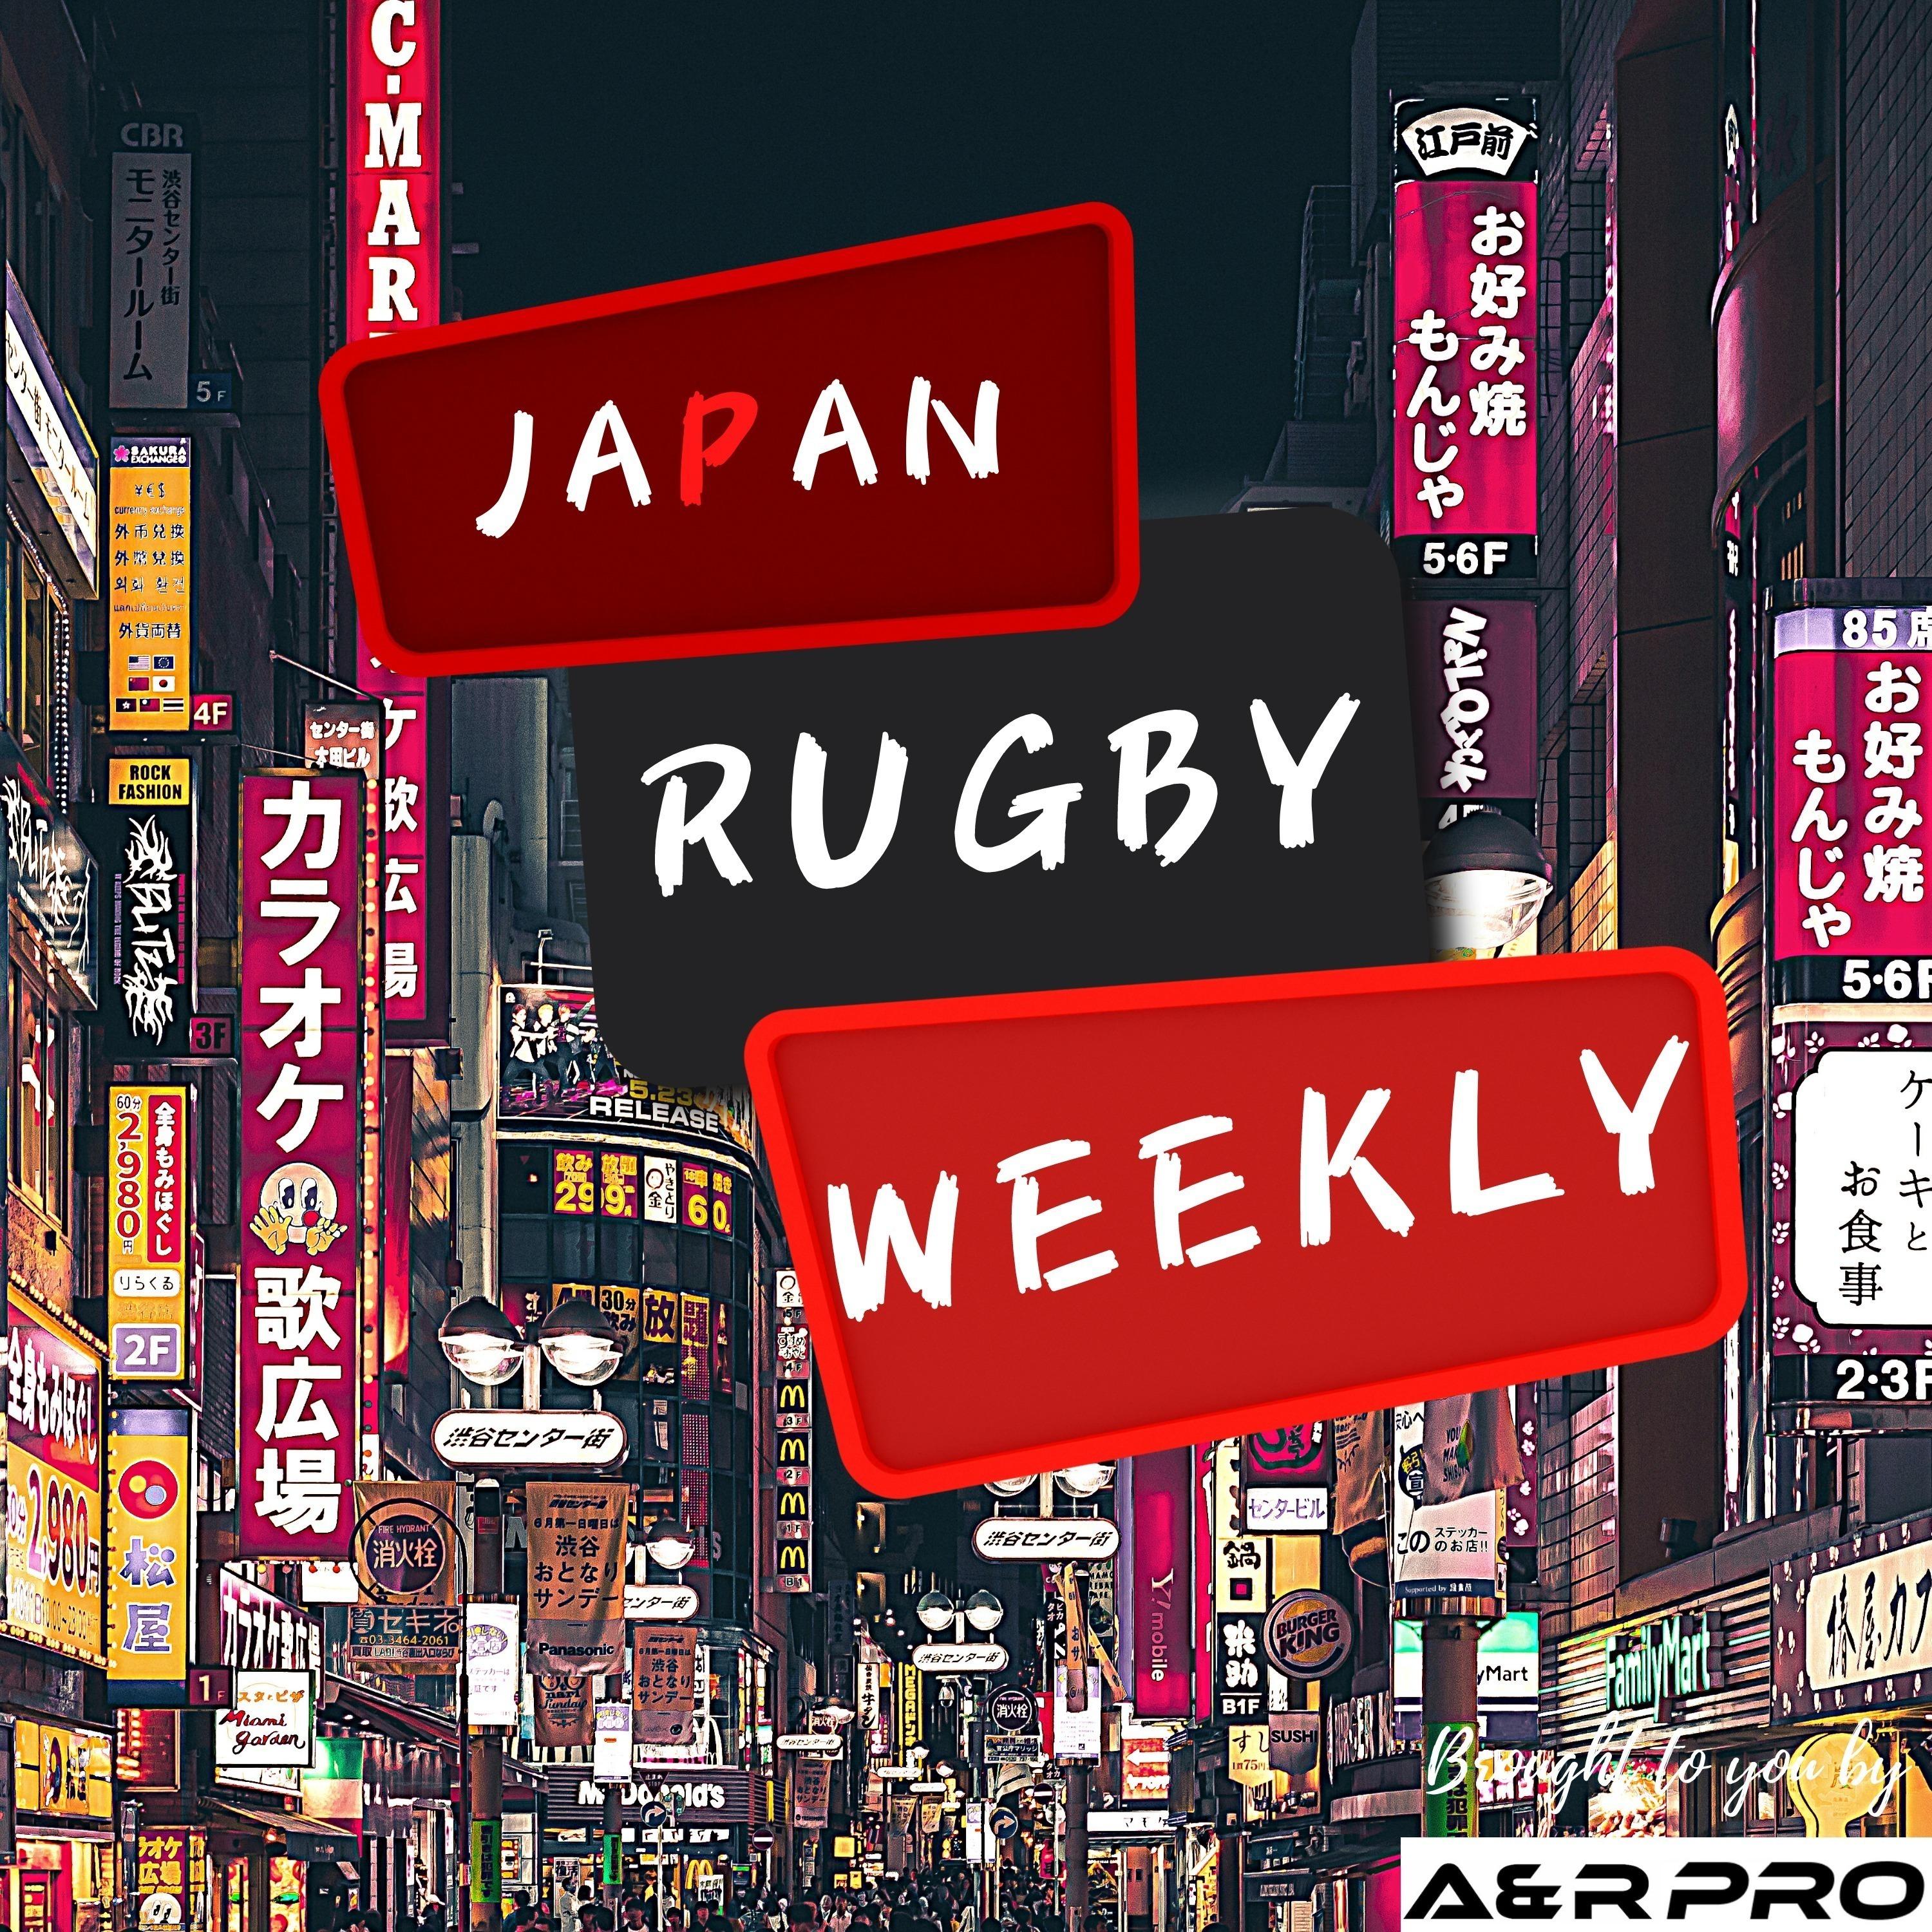 Japan Rugby Weekly